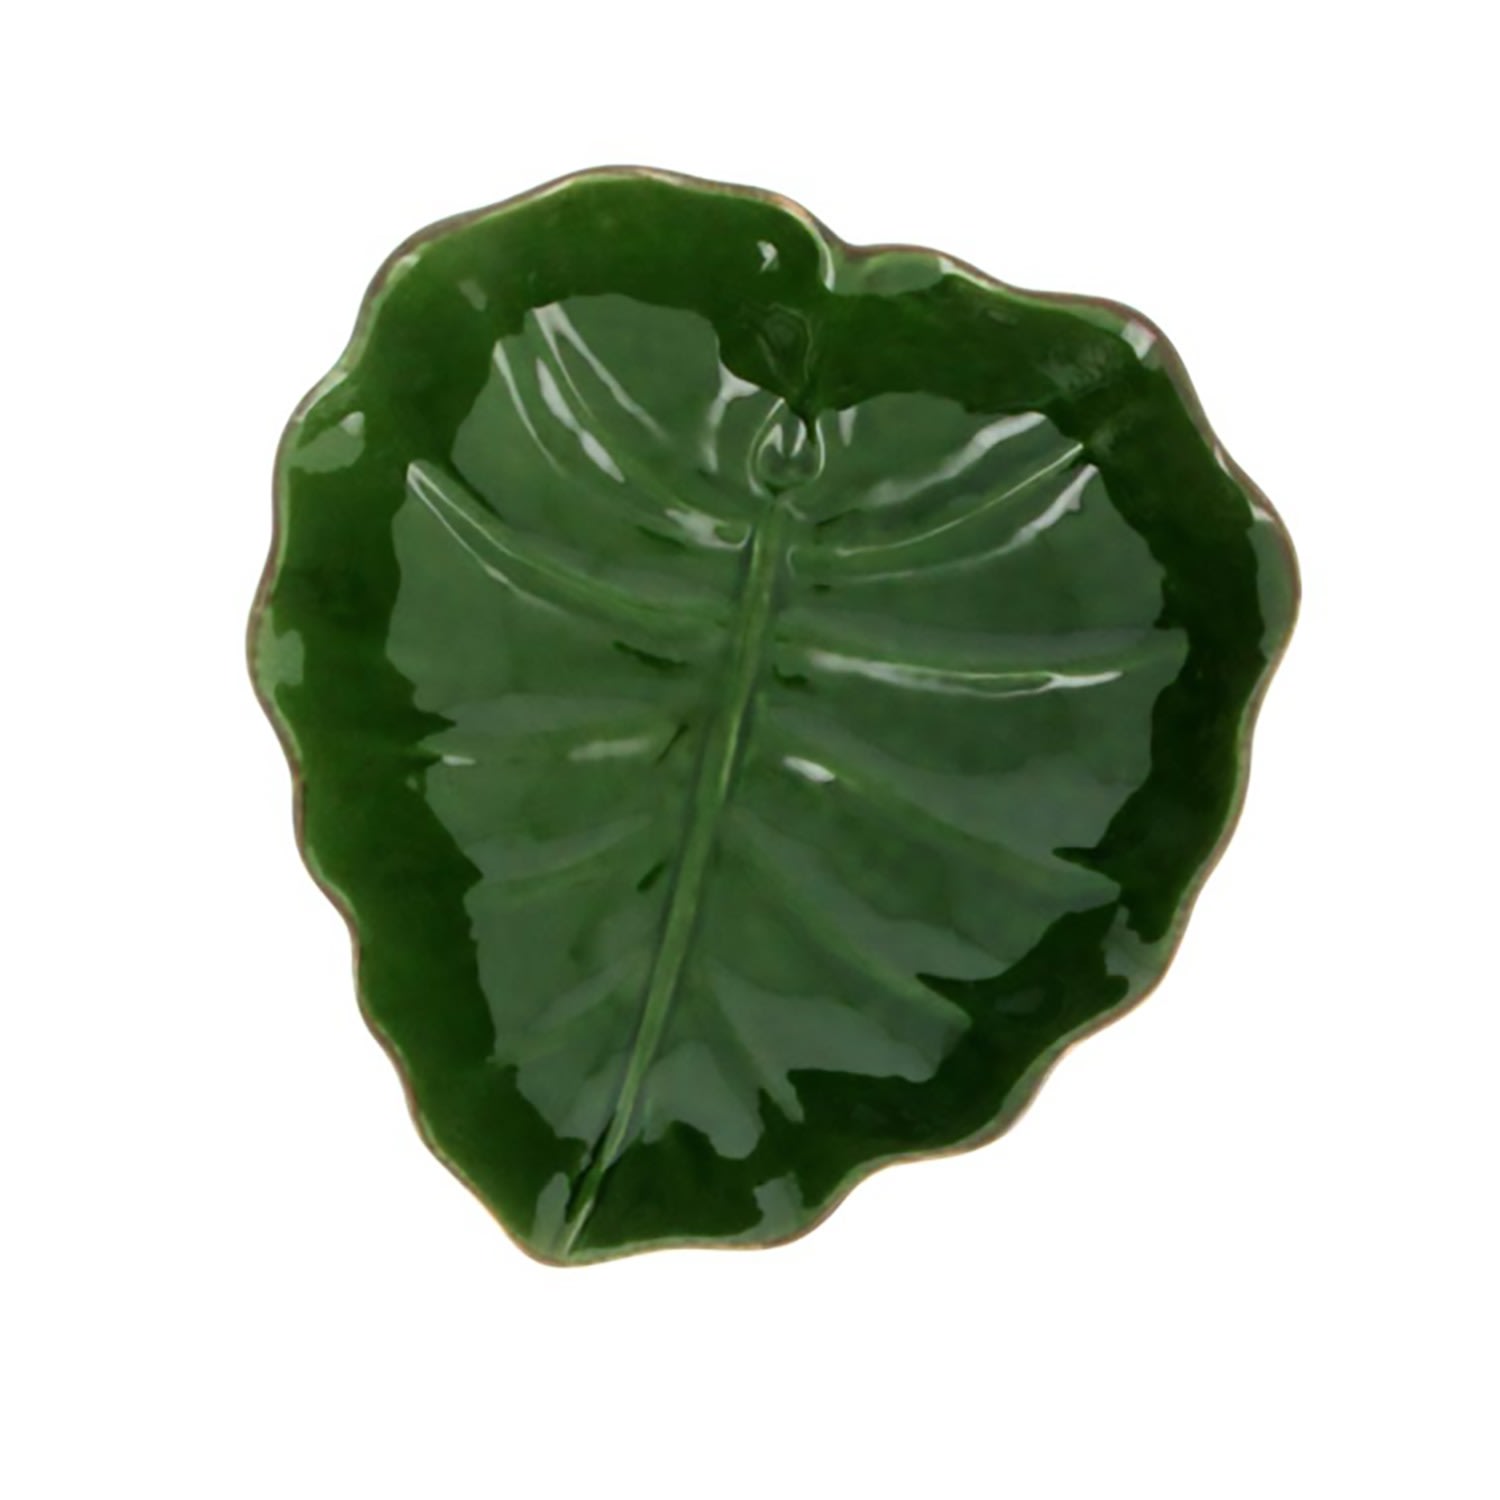 Green Fruit Bowl Ceramic Top Medium Catchii